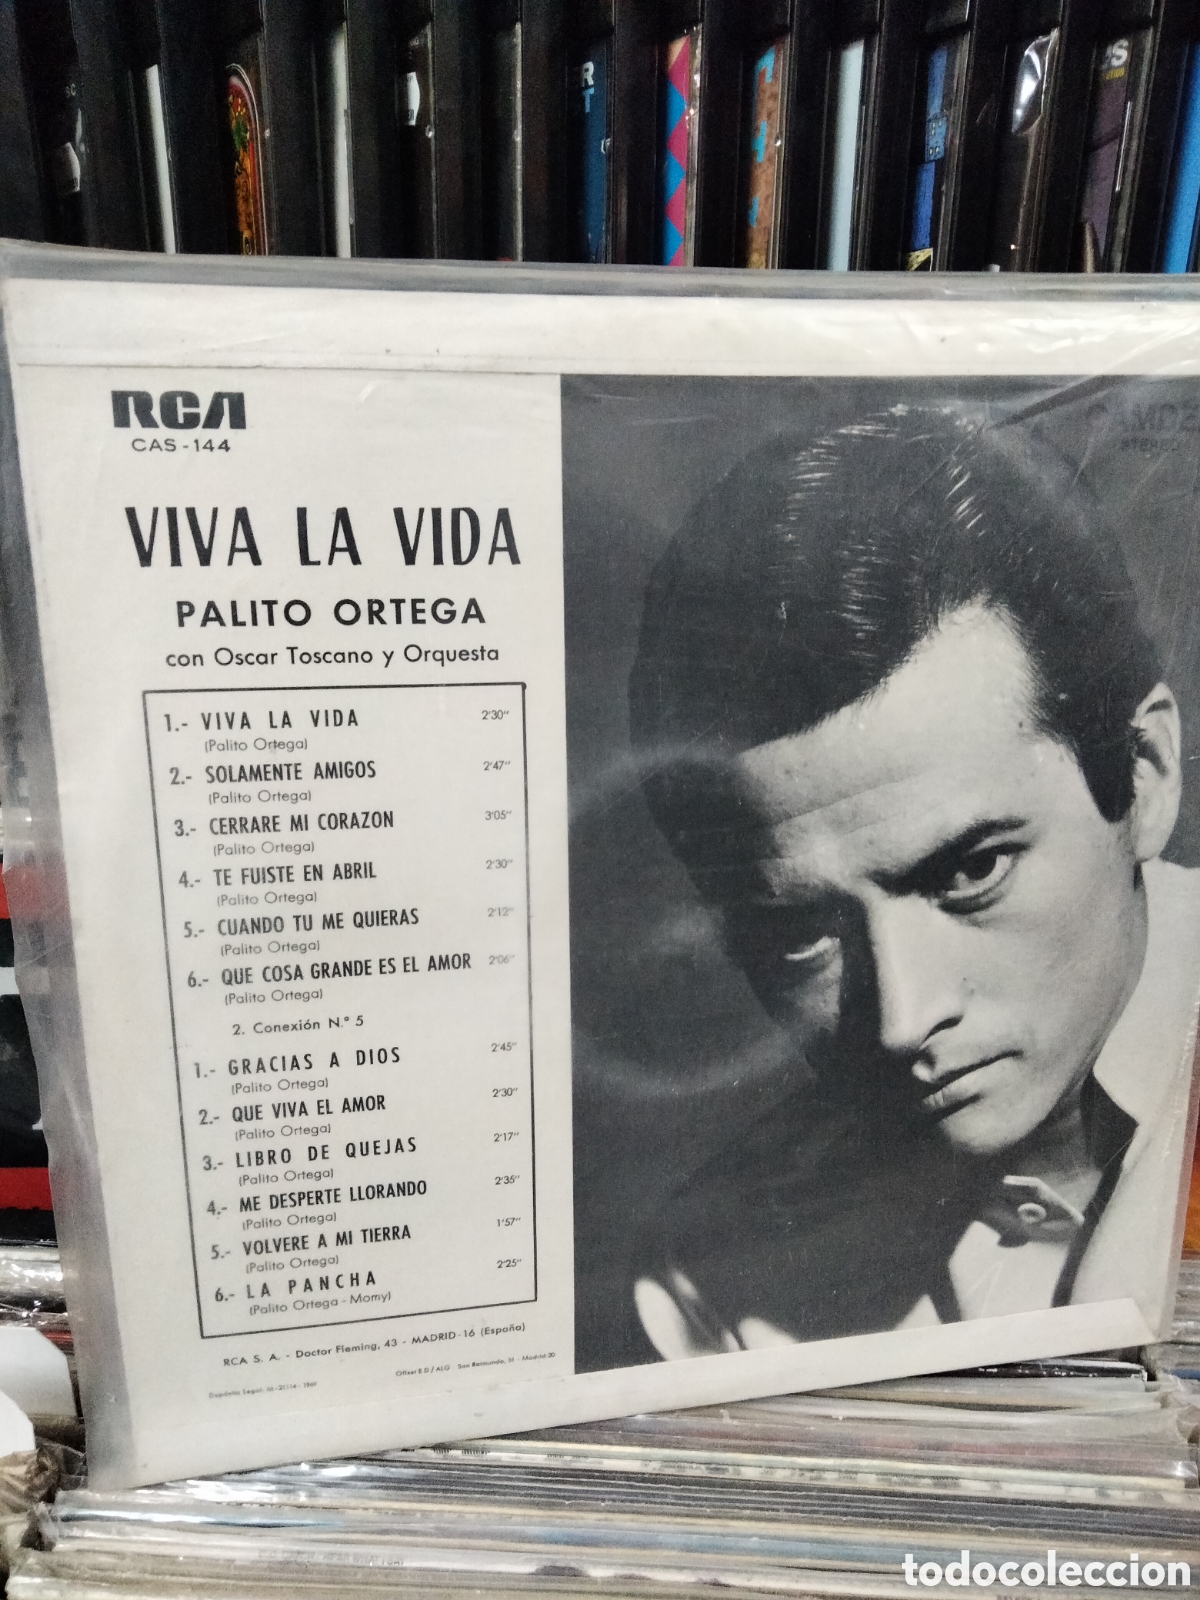  Viva la Vida: CDs y Vinilo